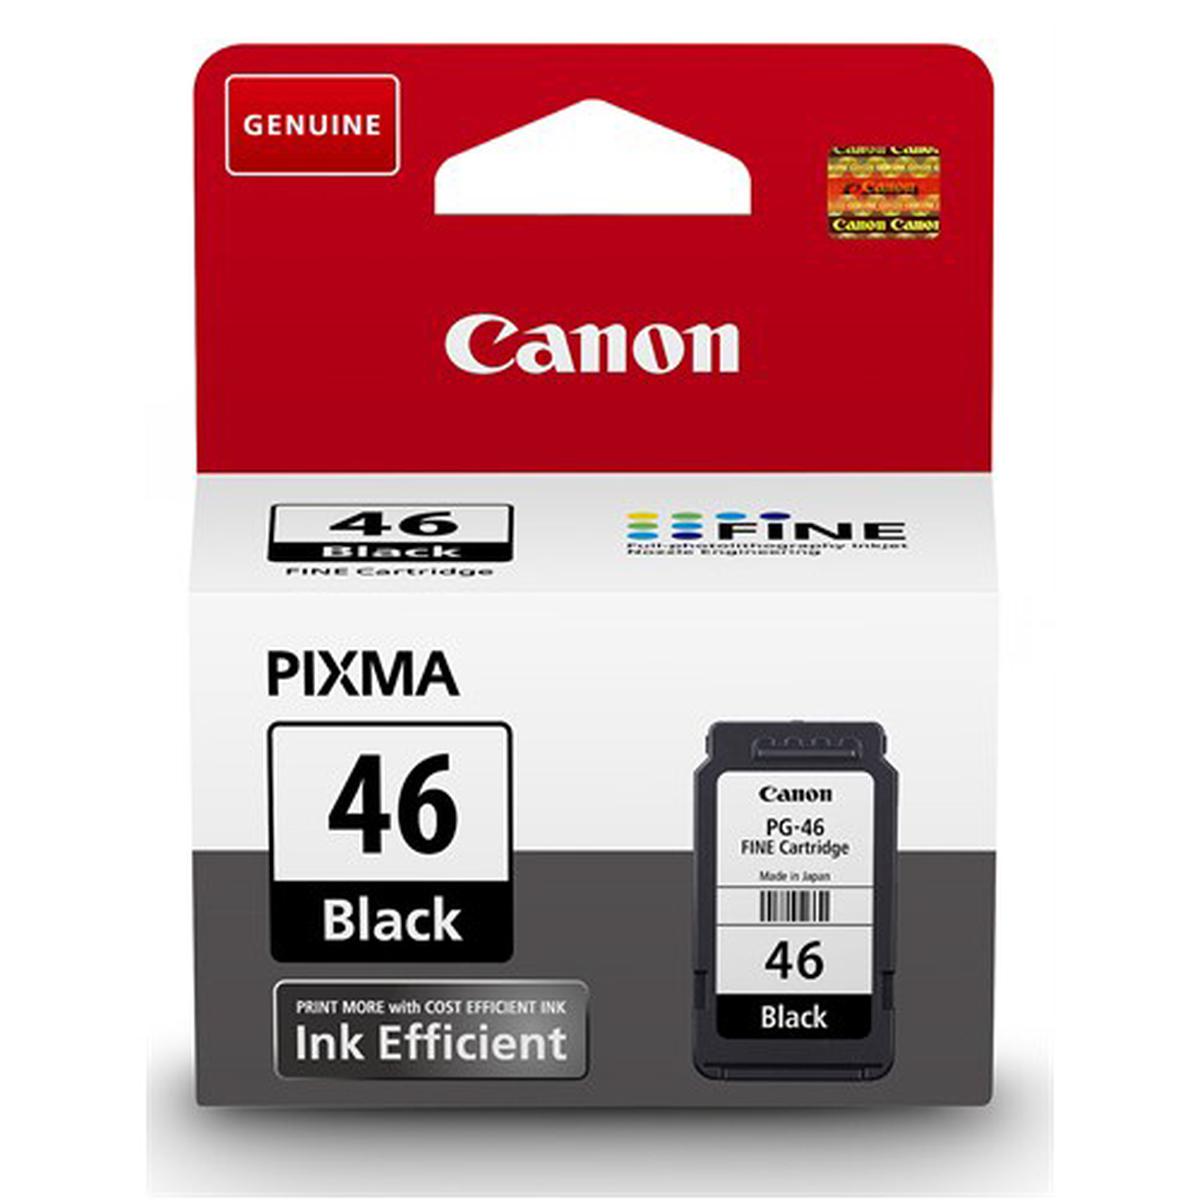 Canon PG-46 Orijinal Siyah Mürekkep Kartuşu (9059B001) - 400 Sayfa resmi